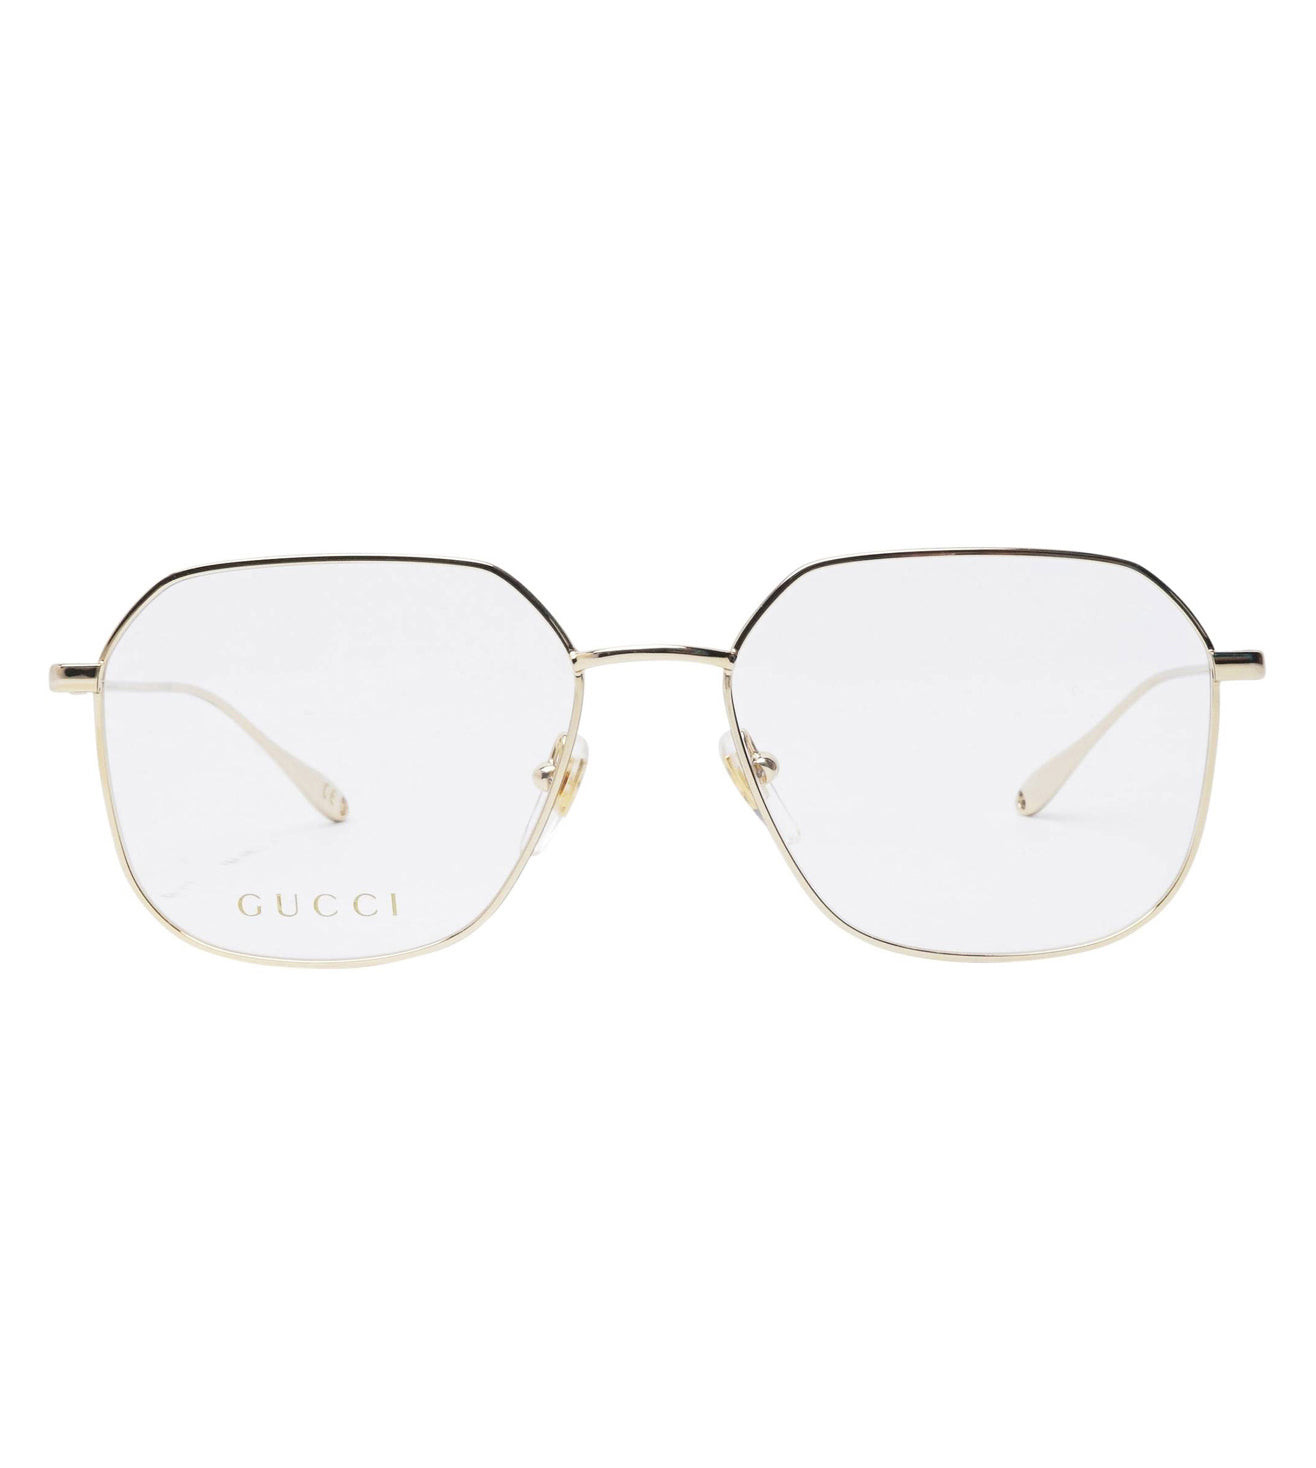 Gucci Women's Gold Hexagonal Optical Frame